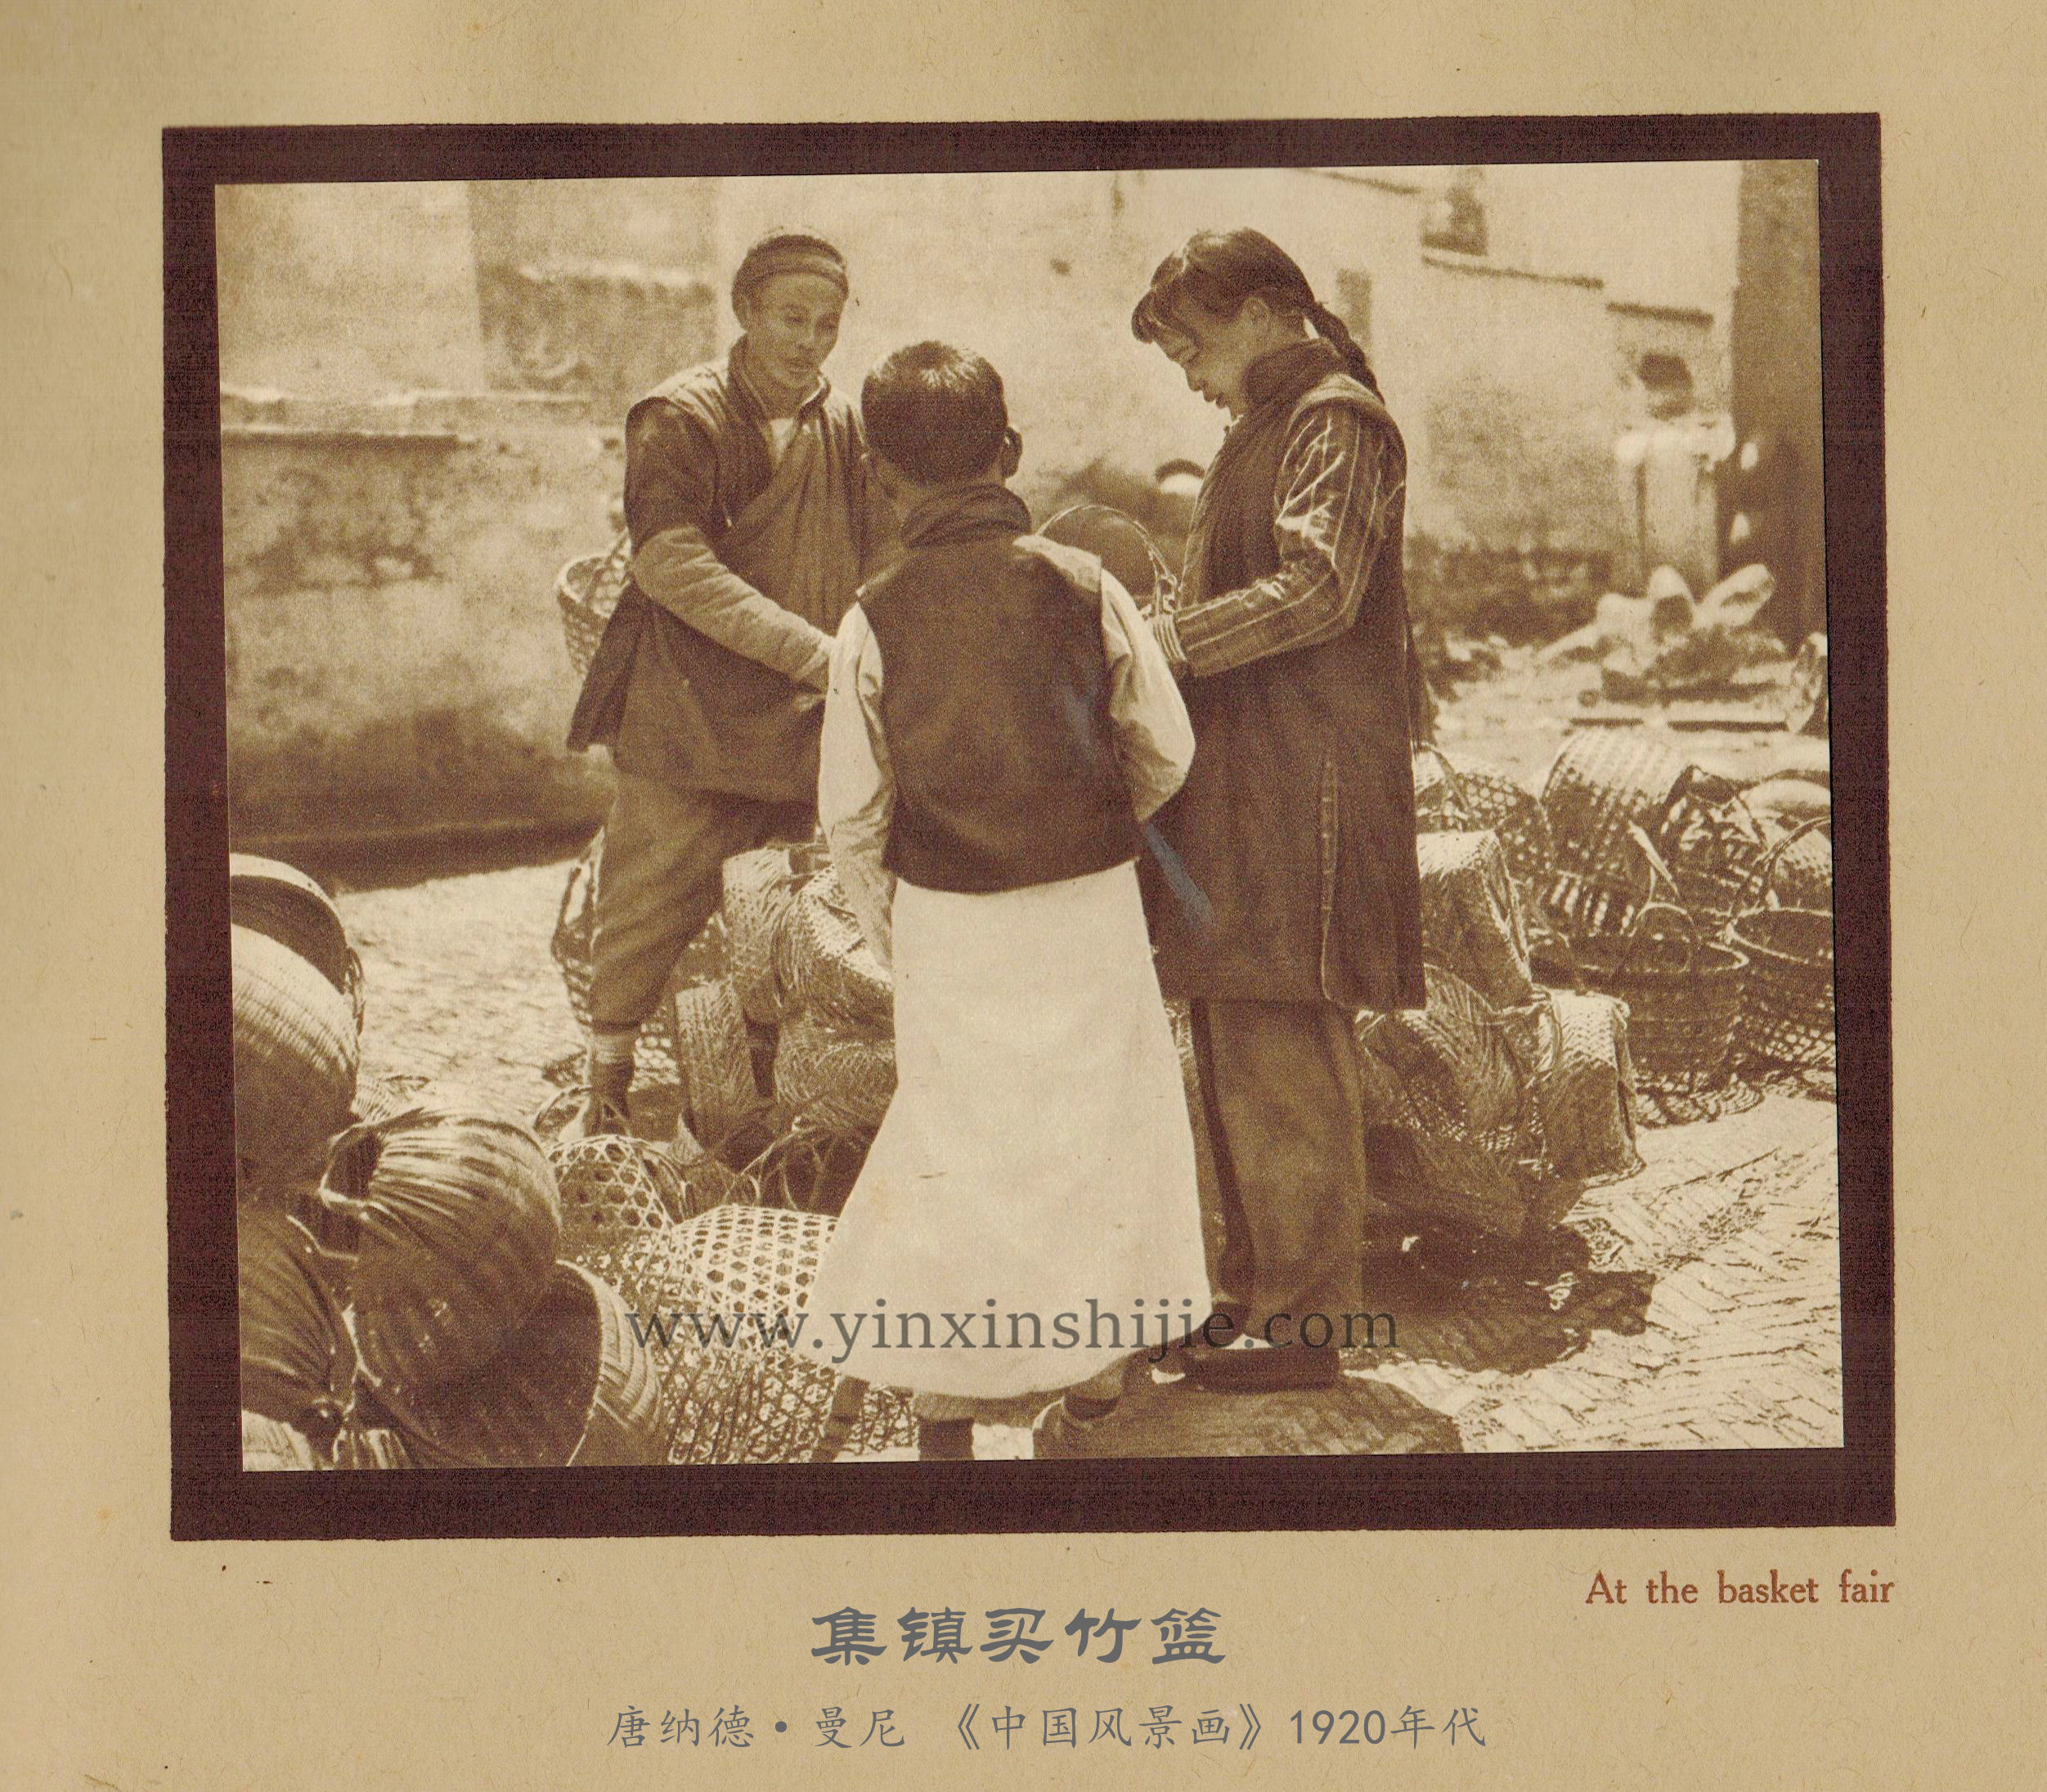 集镇买竹篮-唐纳德·曼尼《中国风景画》1920年代